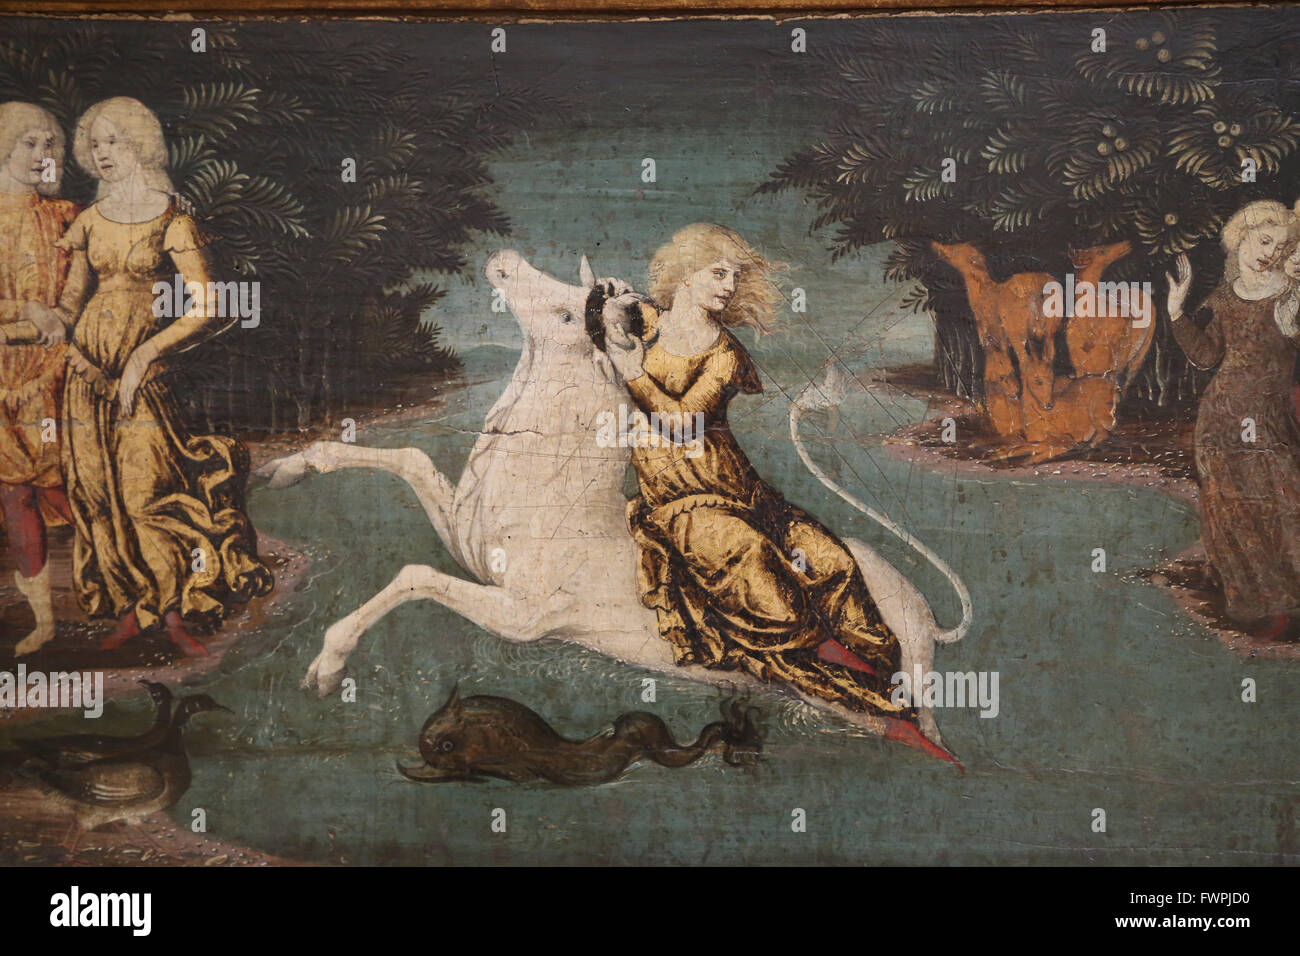 Libera da Verona (1441-1526). Italienischer Maler der Renaissance.  Die Entführung der Europa, 1470. Louvre-Museum. Paris. Frankreich. Stockfoto